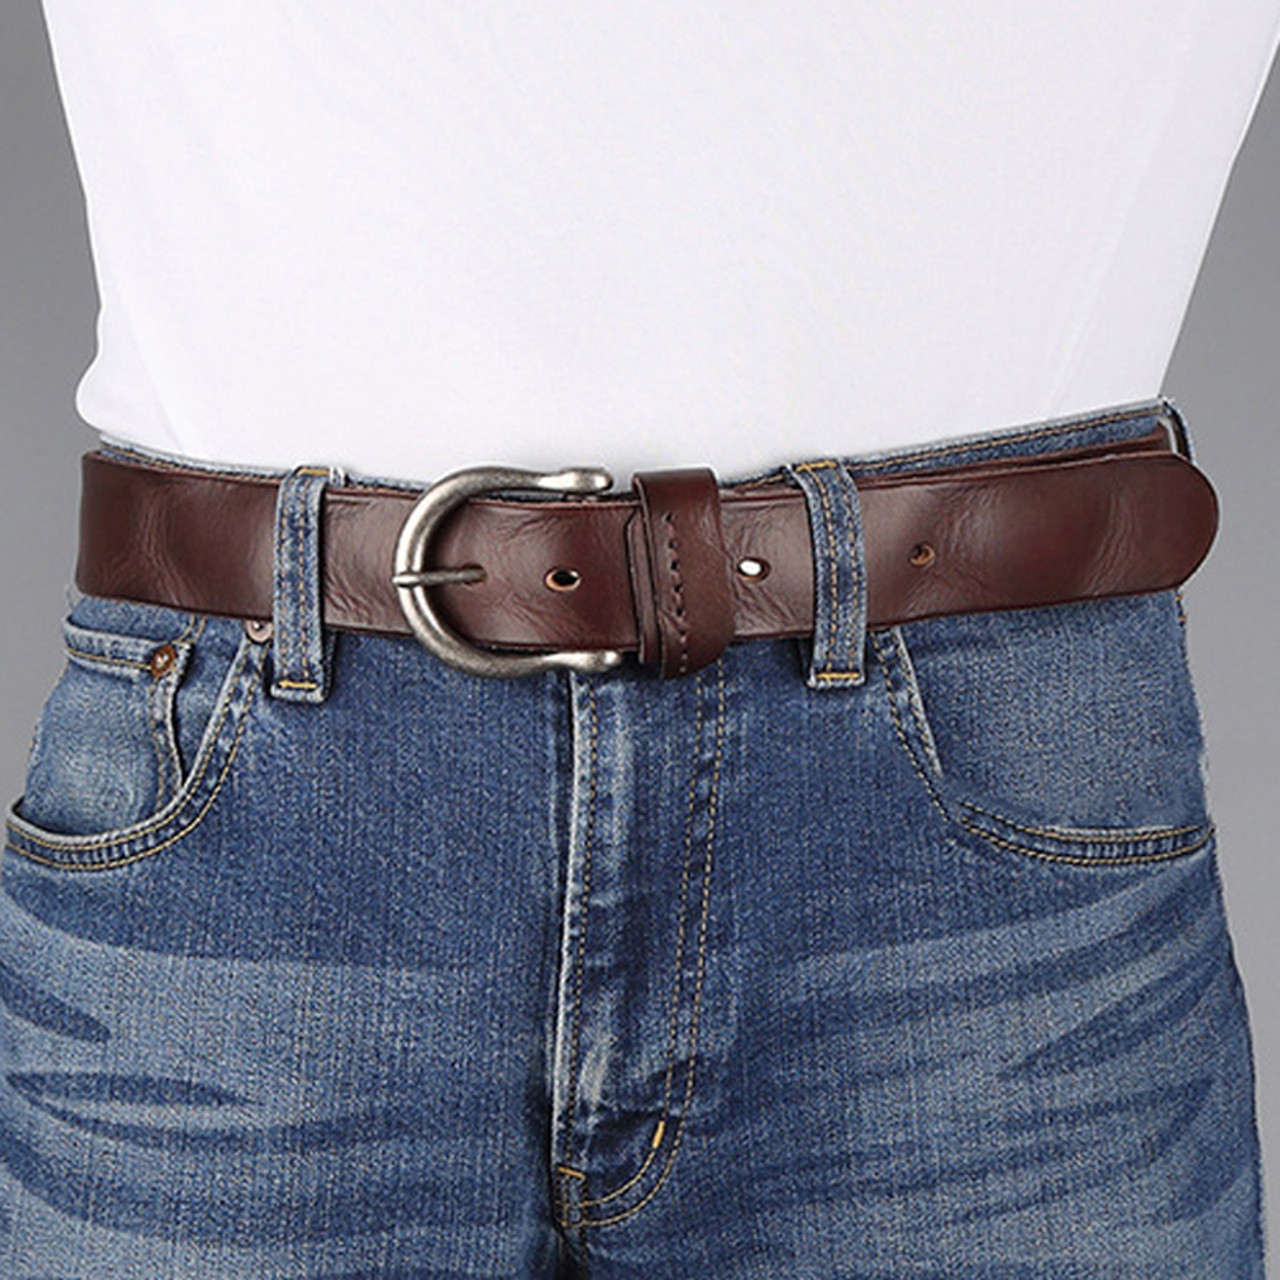 mens belts for jeans